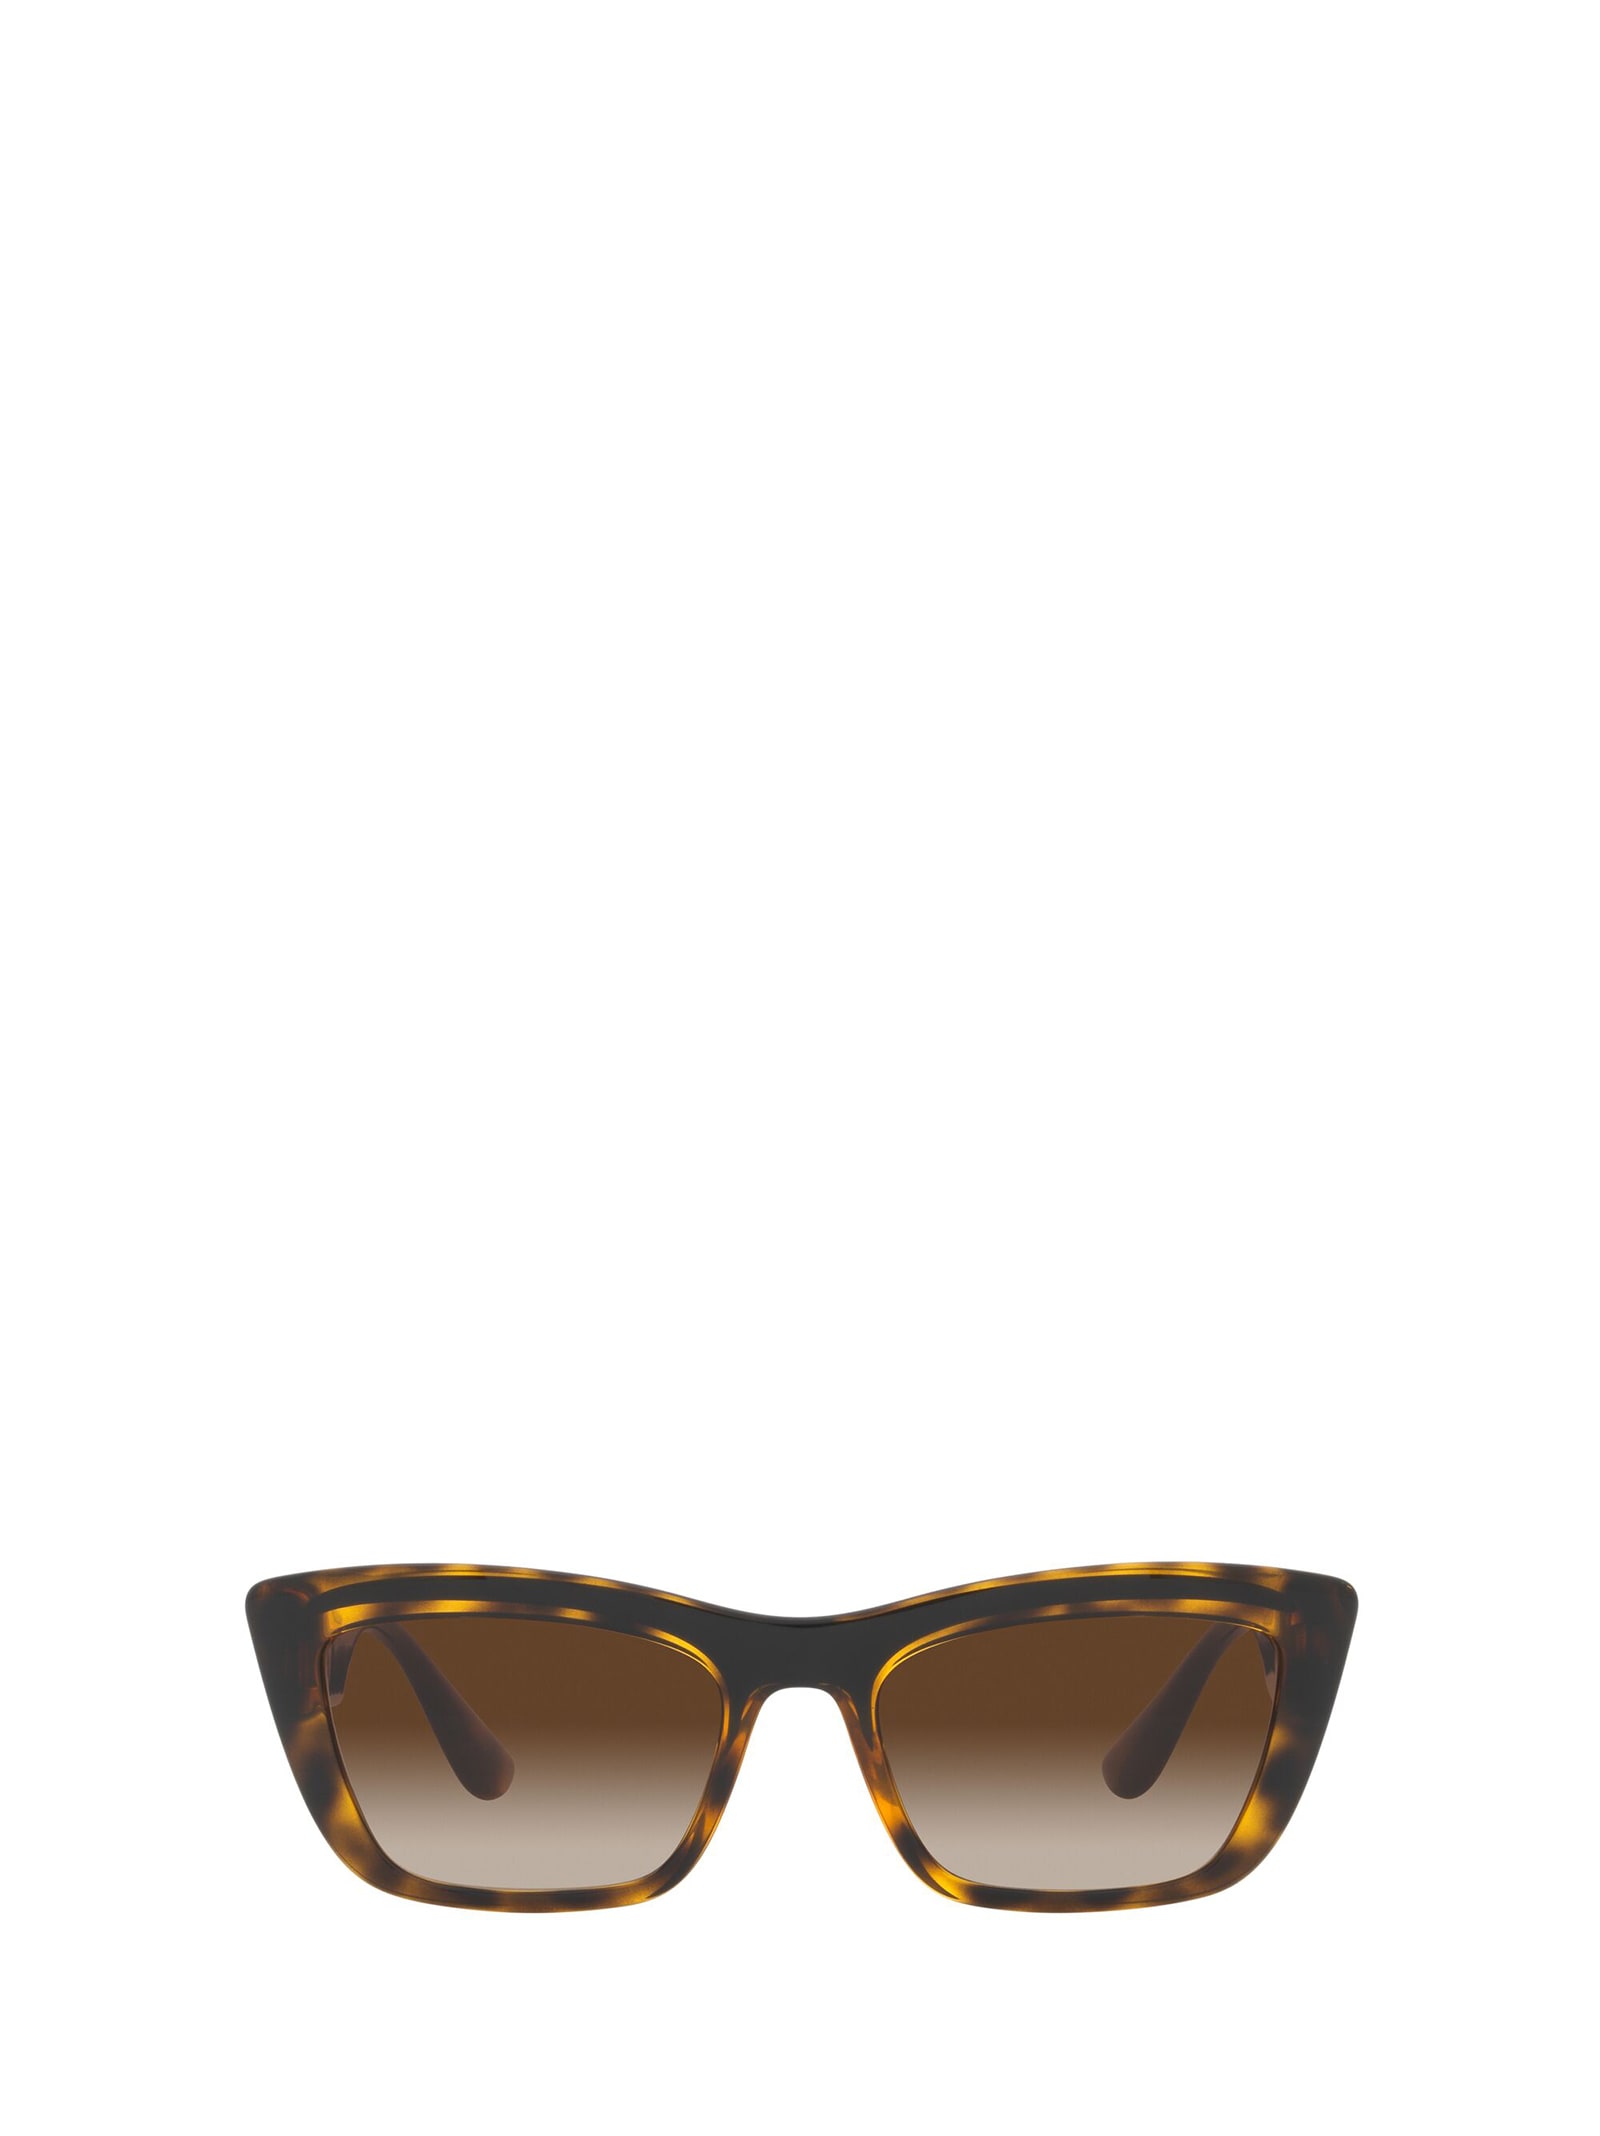 Dolce & Gabbana Eyewear Dg6171 Havana / Black Sunglasses